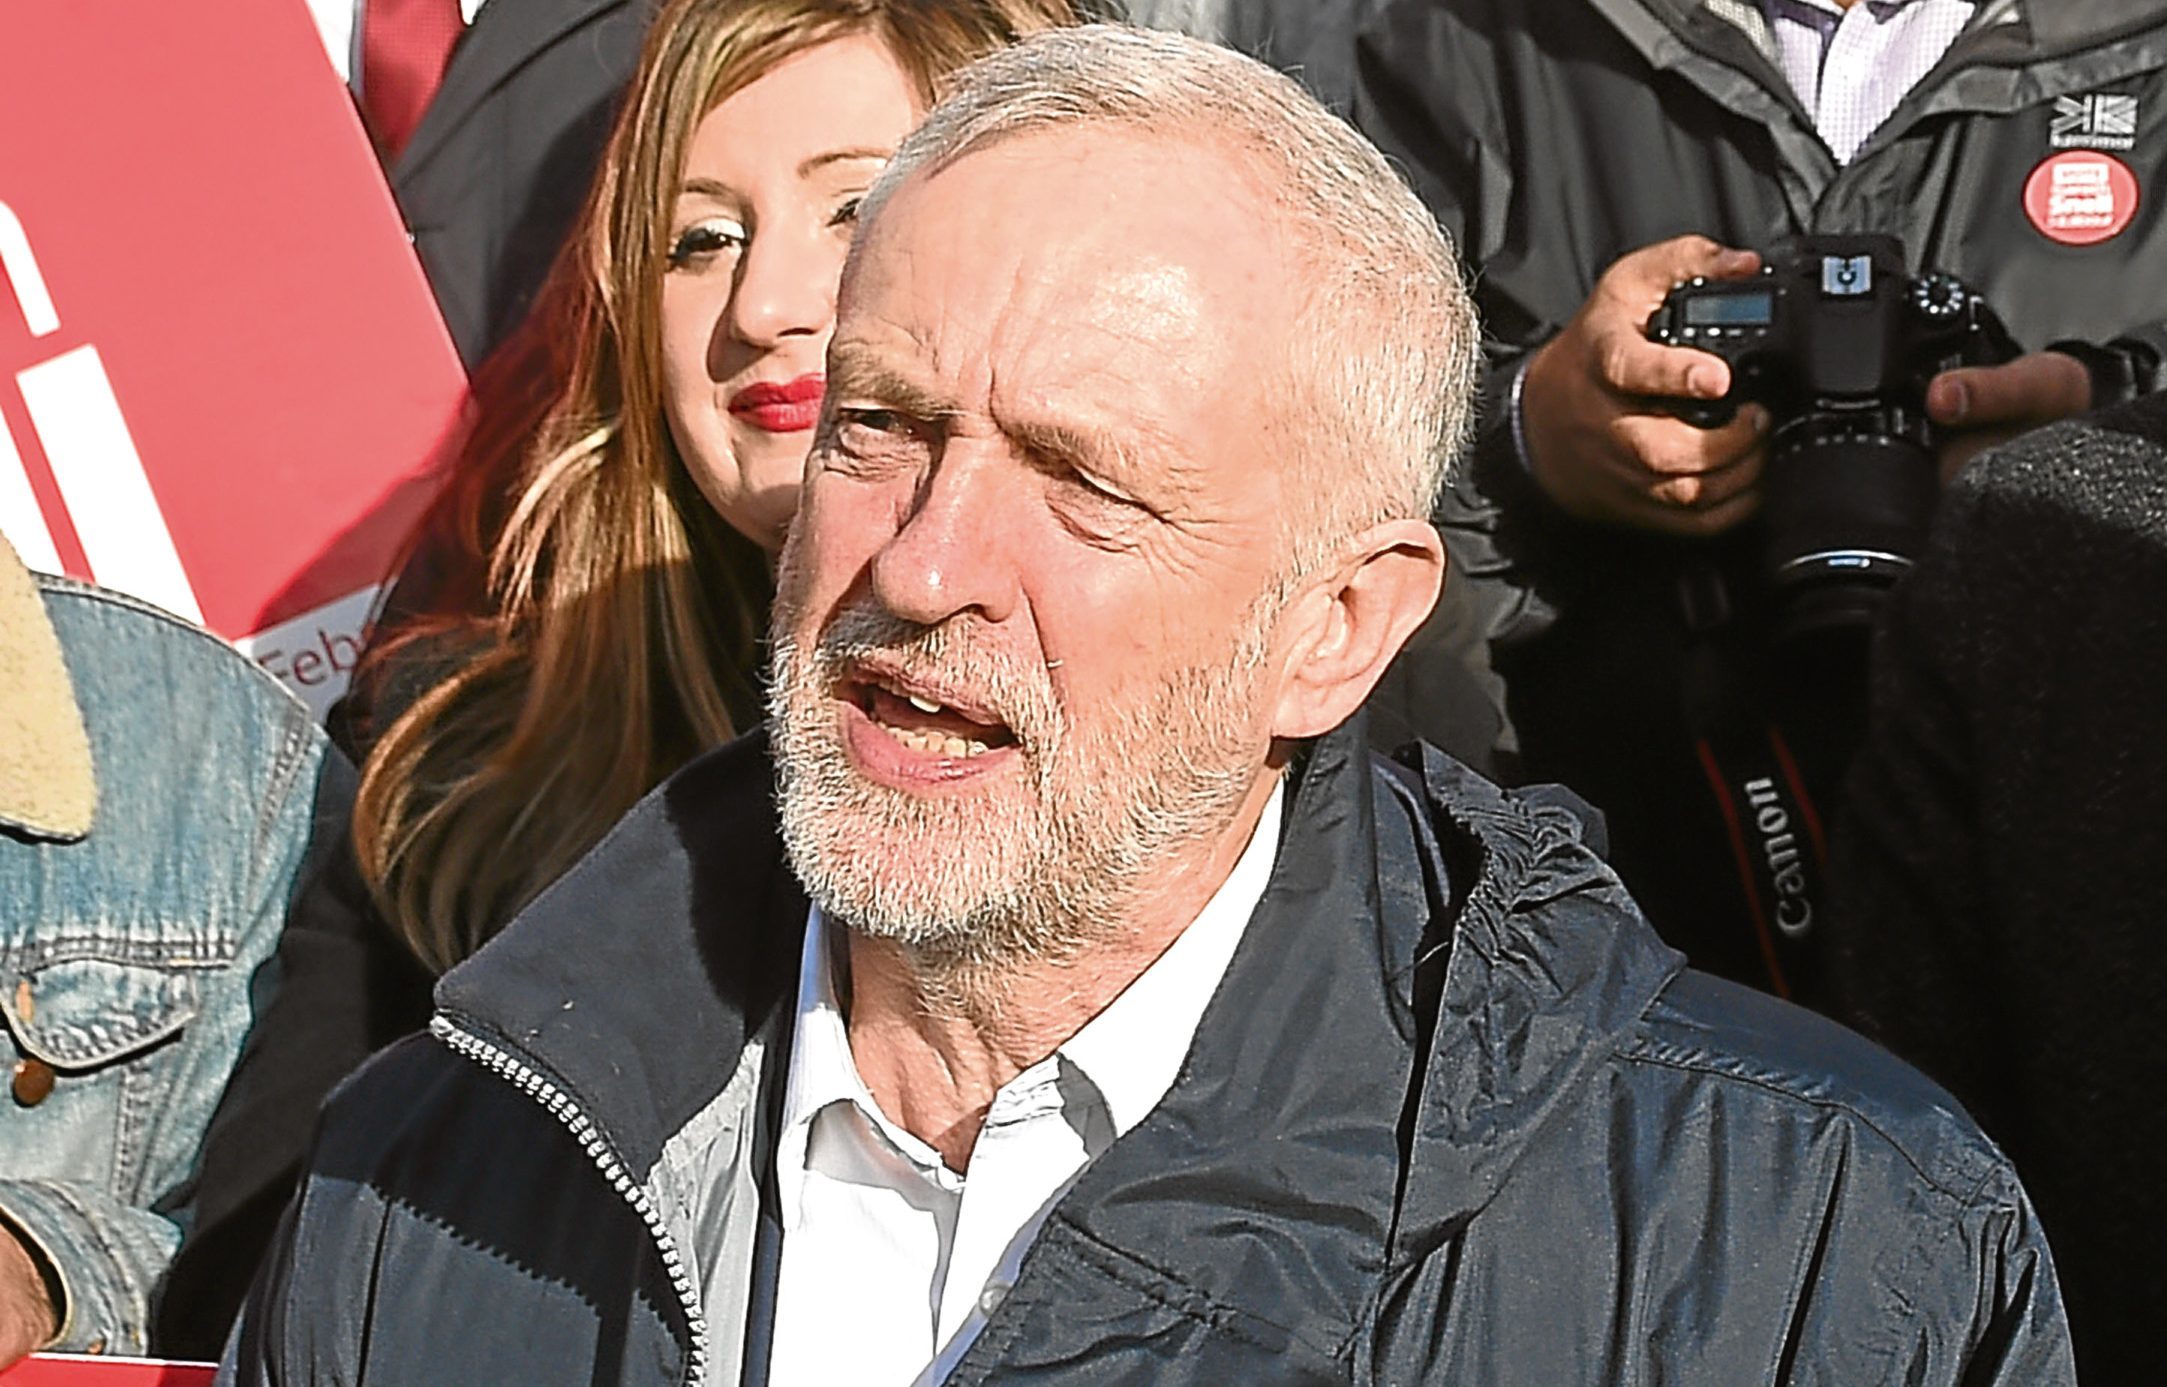 Labour leader Jeremy Corbyn speaking in Stoke-on-Trent (Joe Giddens/PA Wire)